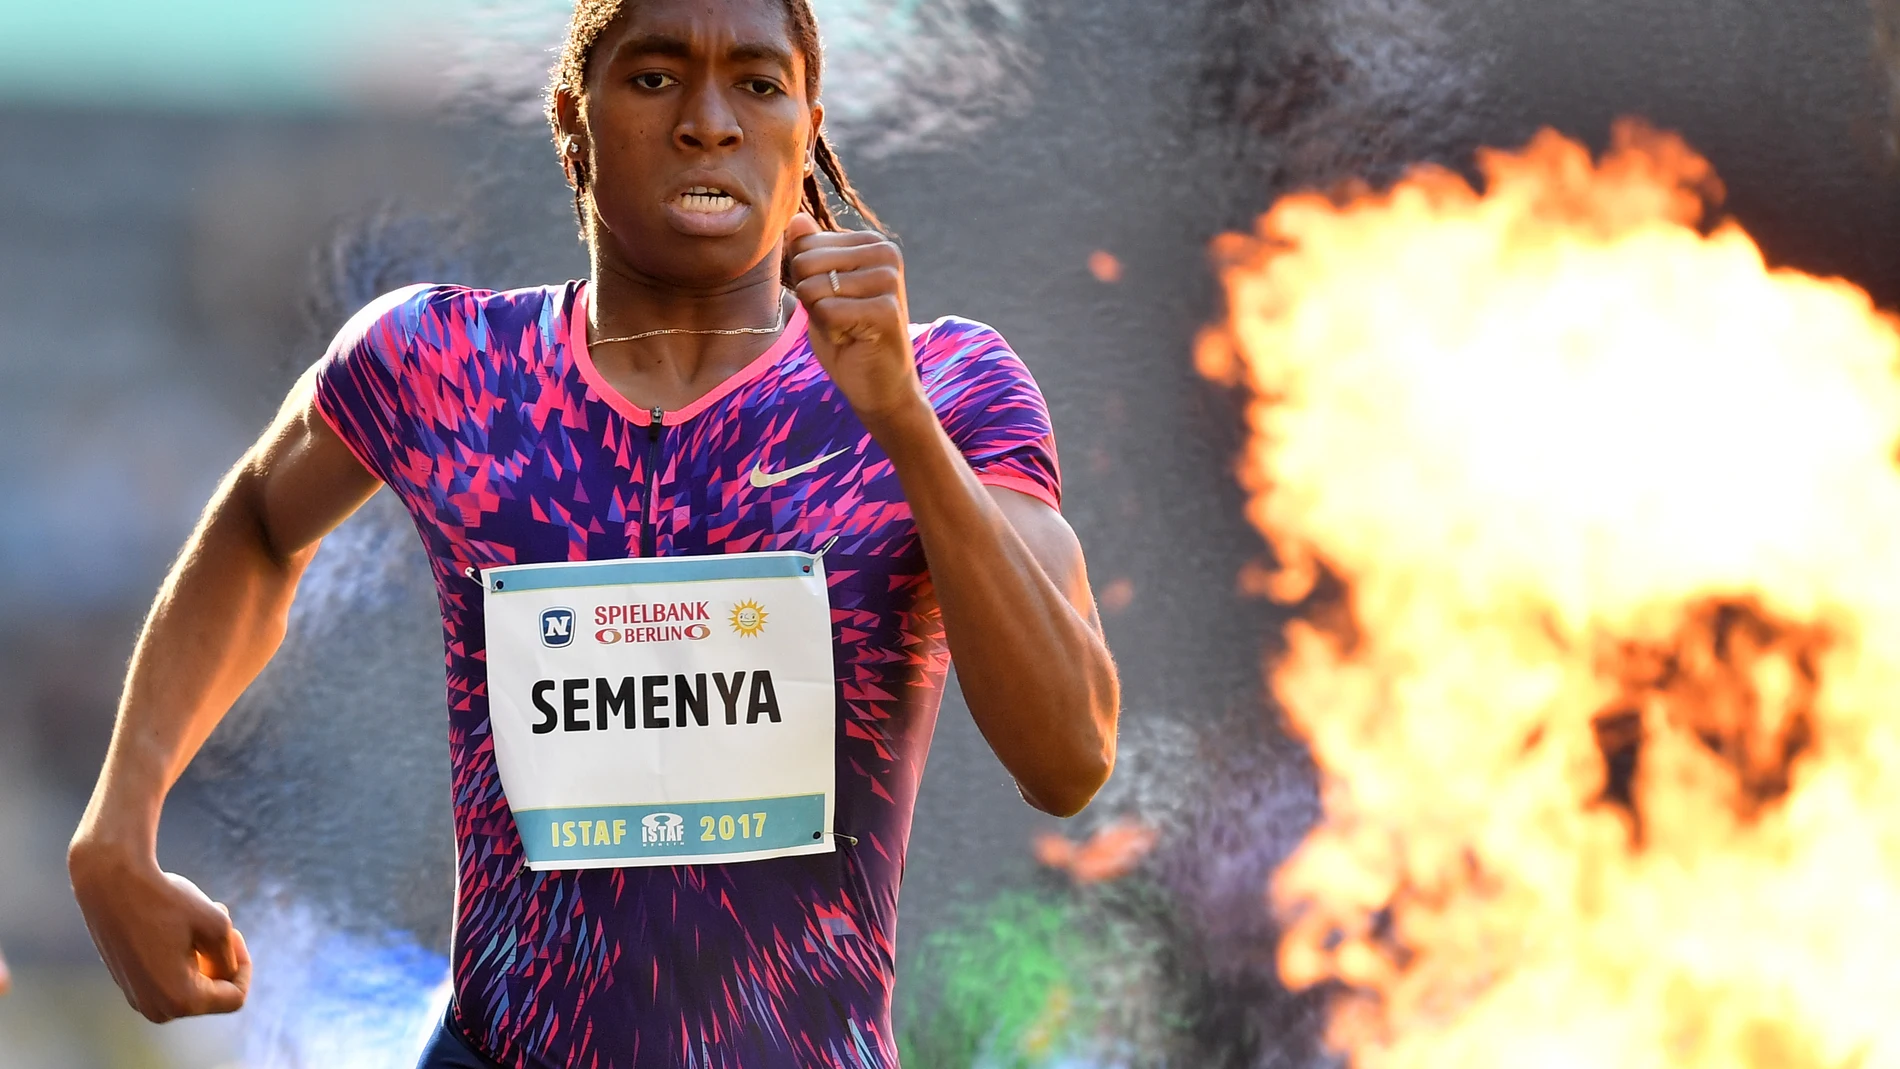 Atletismo.- El Tribunal Europeo de Derechos Humanos considera que Caster Semenya fue "discriminada" por World Athletics